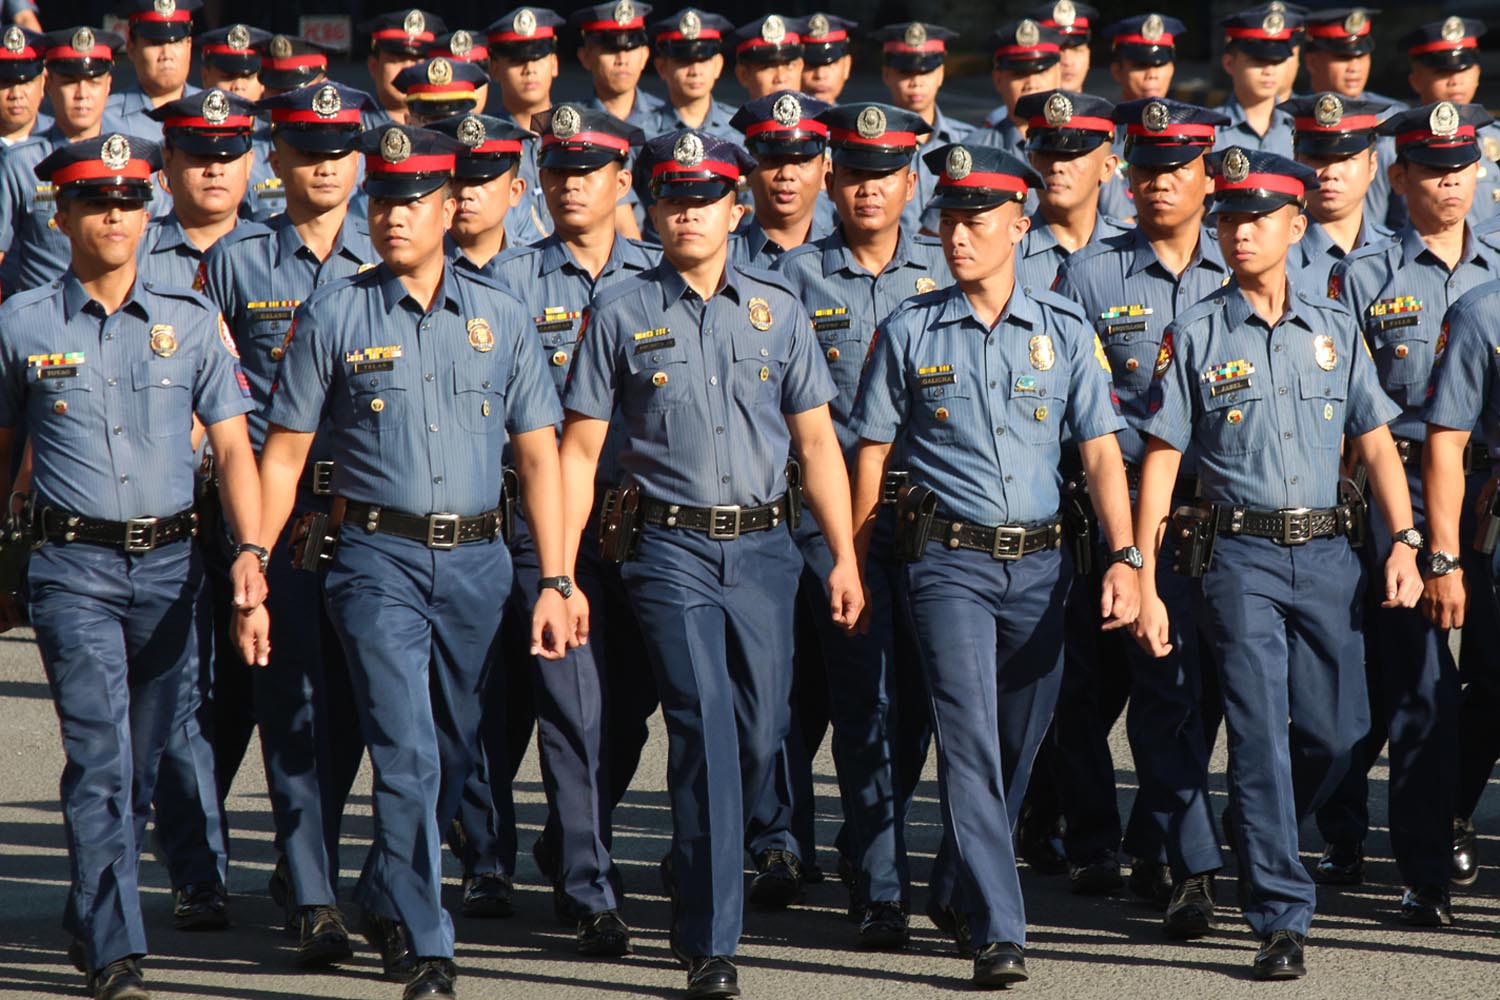 Покажи картинки полицейских. Полиция картинки. Philippine National Police. Форма полицейского картинка для детей. Коллаж фотографий с полицией.